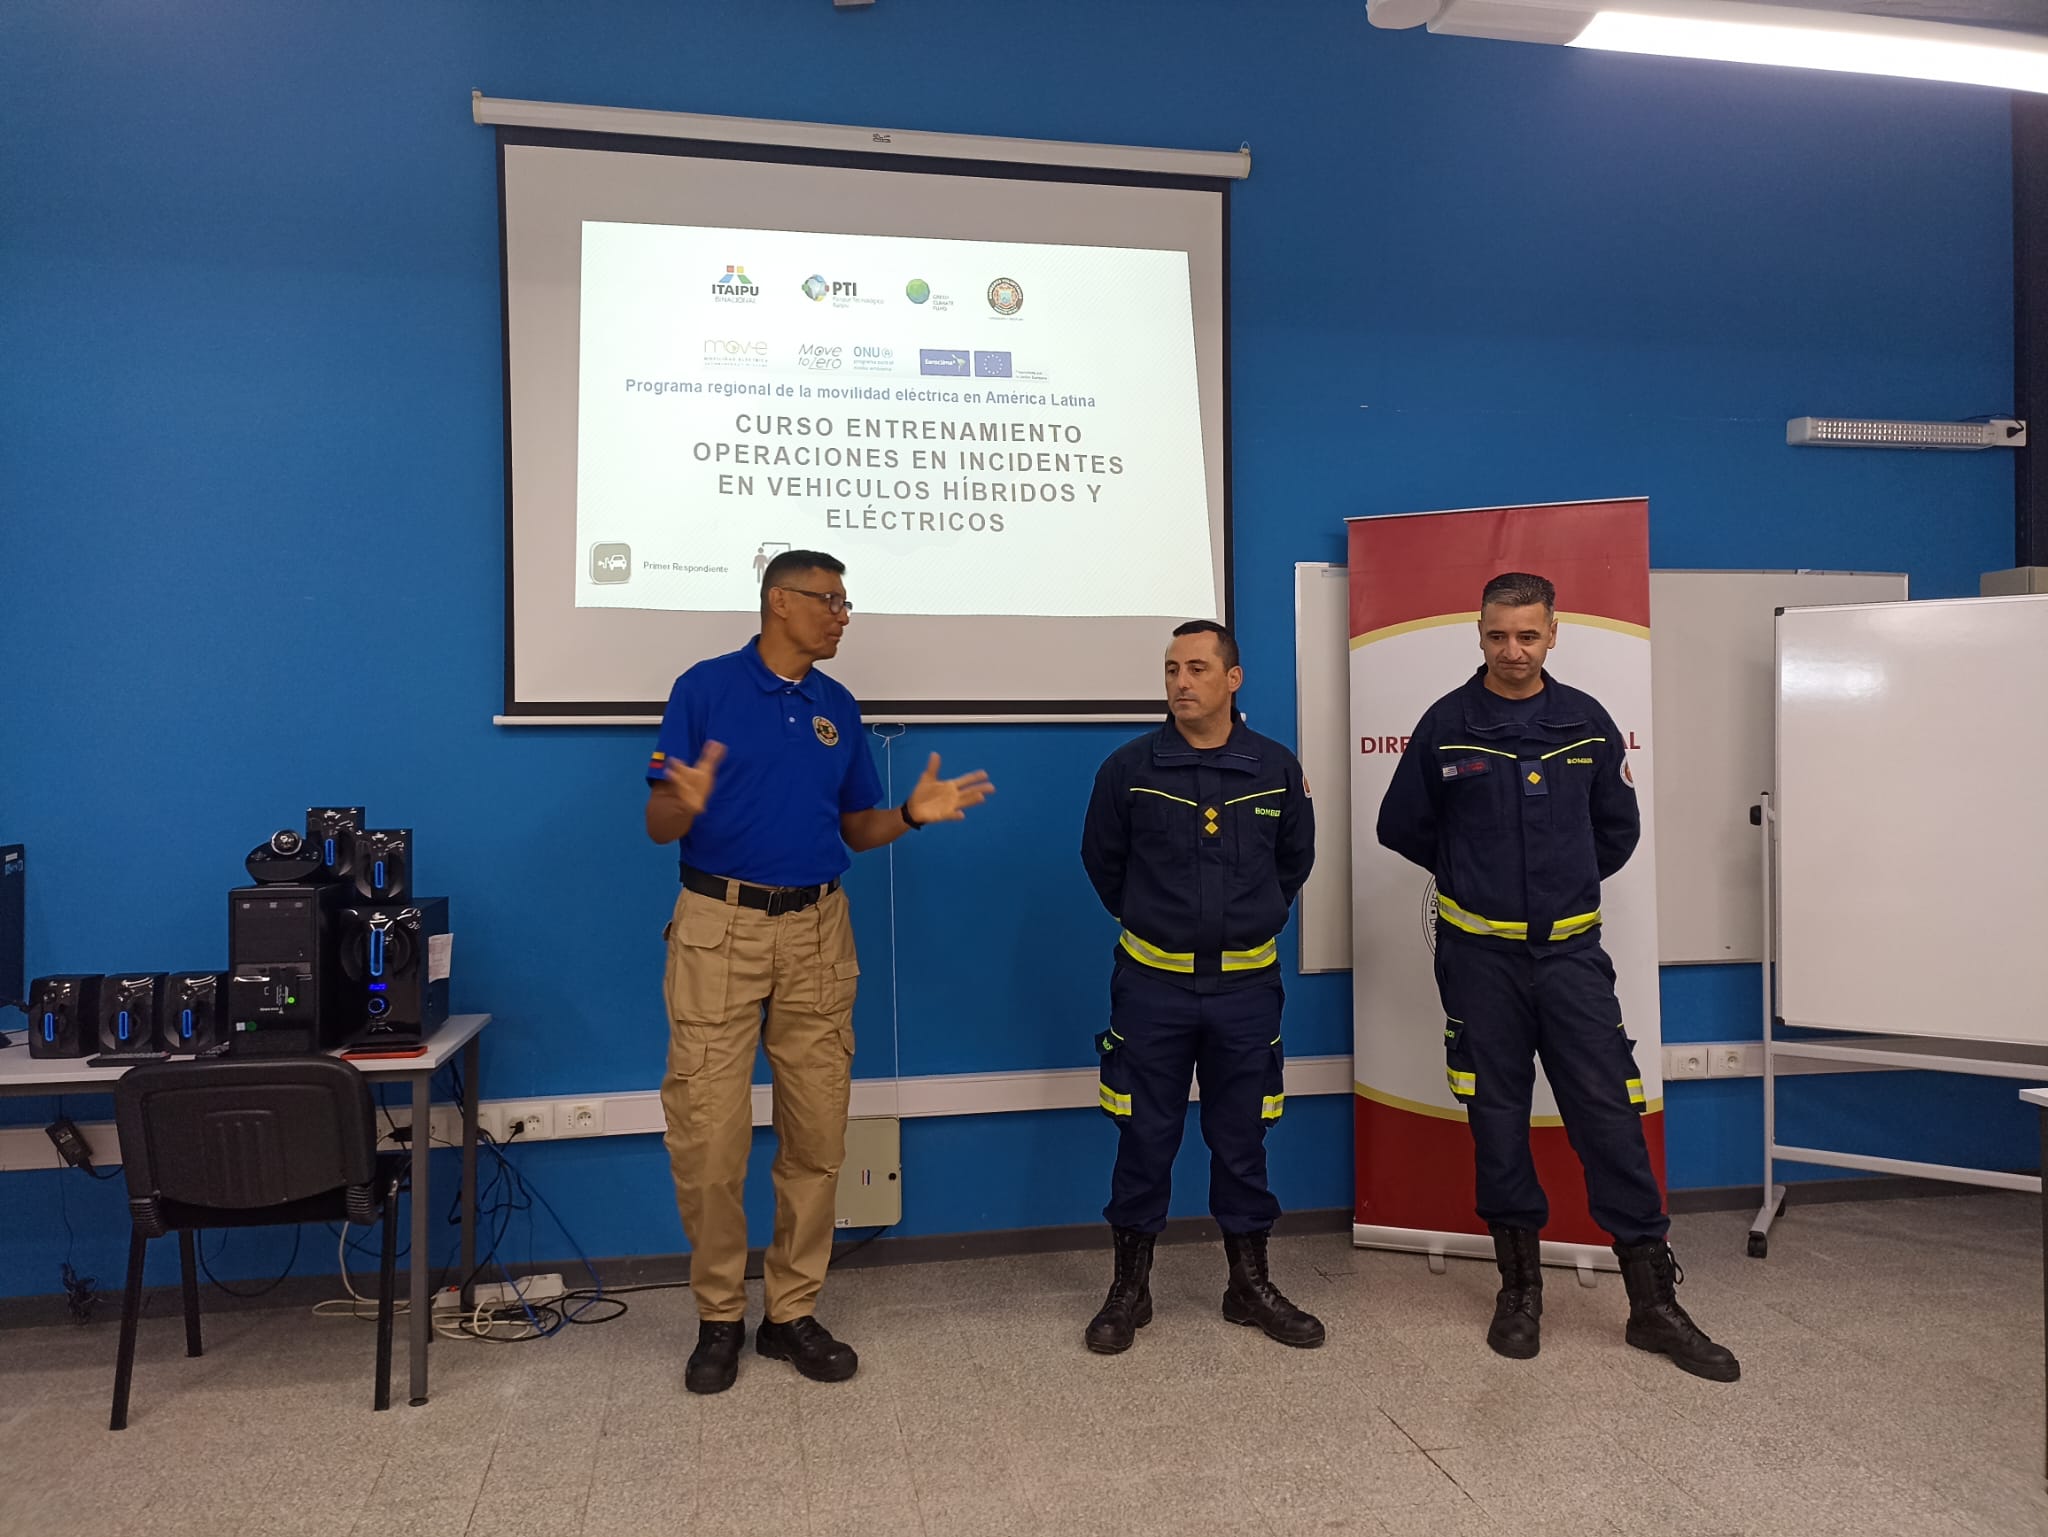 IMG_20230509_16000-vCVXKfWx.jpeg - El pasado jueves 11 de mayo culminó la &#034;Capacitación para bomberos sobre manejo de incidentes relacionados con la movilidad eléctrica&#034; en donde se capacitaron a 25 bomberos en la Base Aérea de Santa Bernardina del departamento de Durazno. Esta capacitación es la continuación del primer curso regional que organizó la plataforma MOVE del Programa de la Naciones Unidas para el Medio Ambiente a finales de 2022 en Paraguay, donde participaron y se formaron dos bomberos instructores de Uruguay.